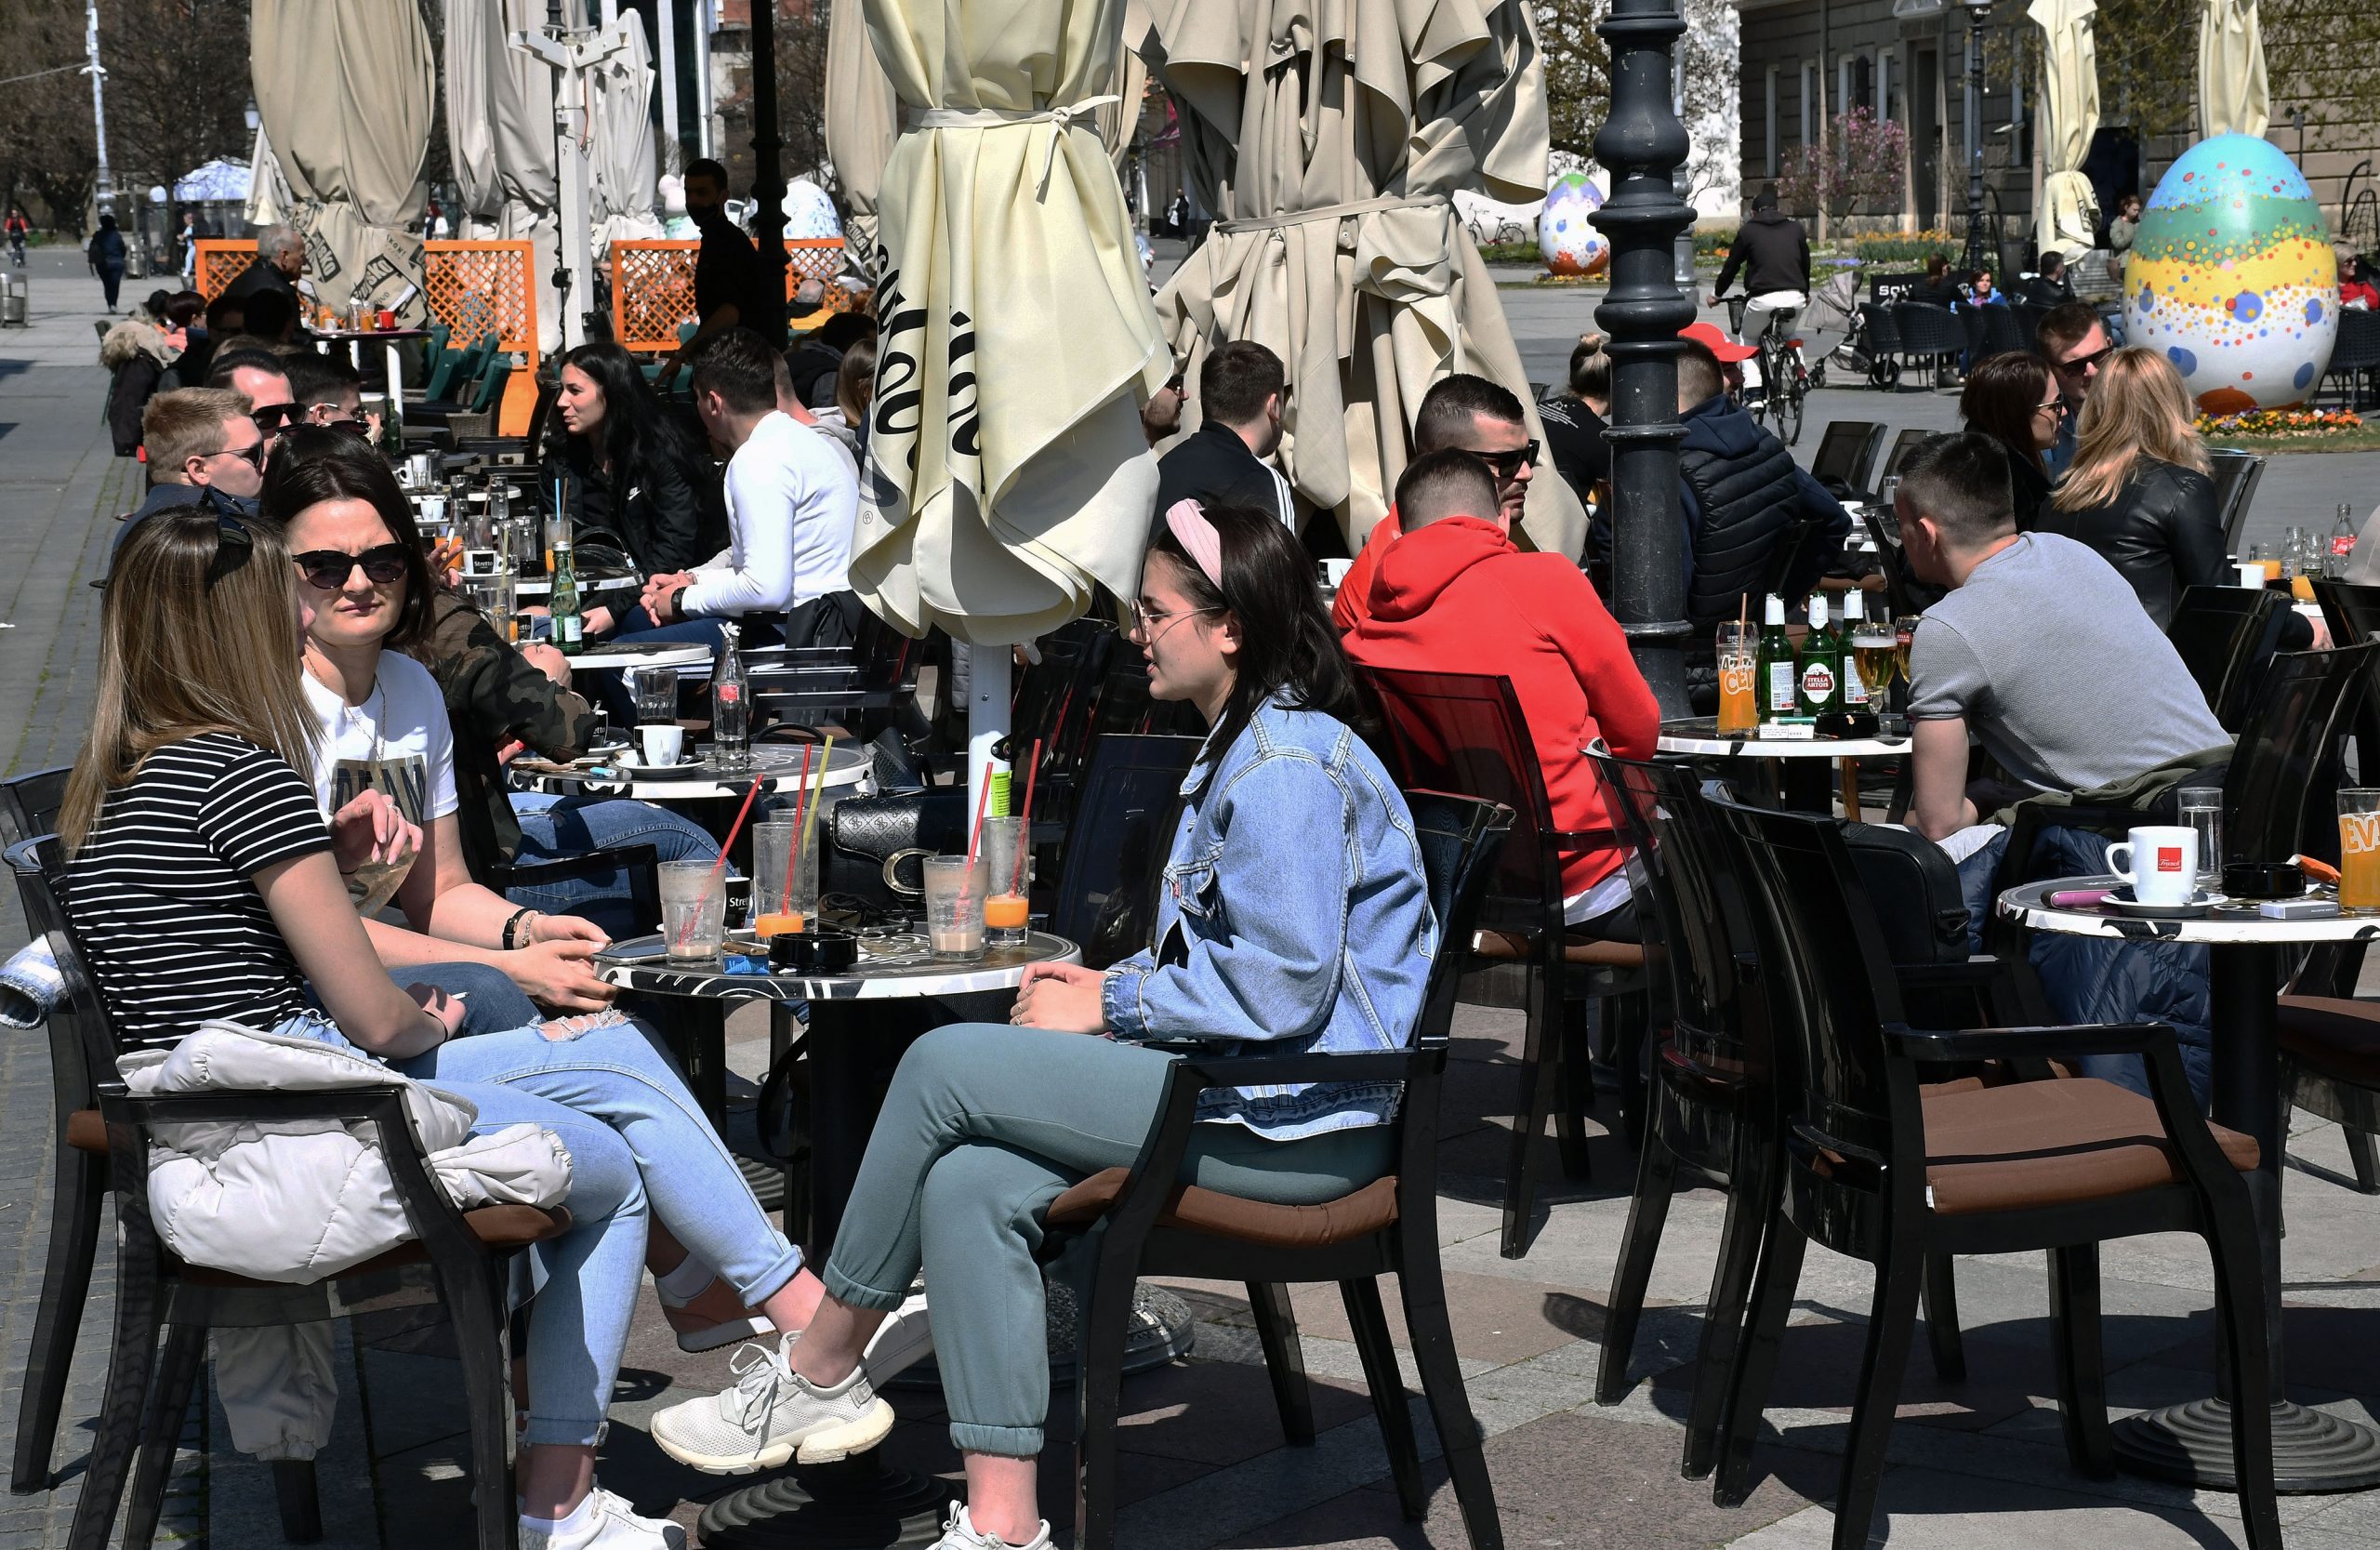 09.04.2021., Slavonski Brod - Terase kafica u sredistu grada popunjene su gotovo do zadnjeg slobodnog mjesta.
Photo: Ivica Galovic/PIXSELL